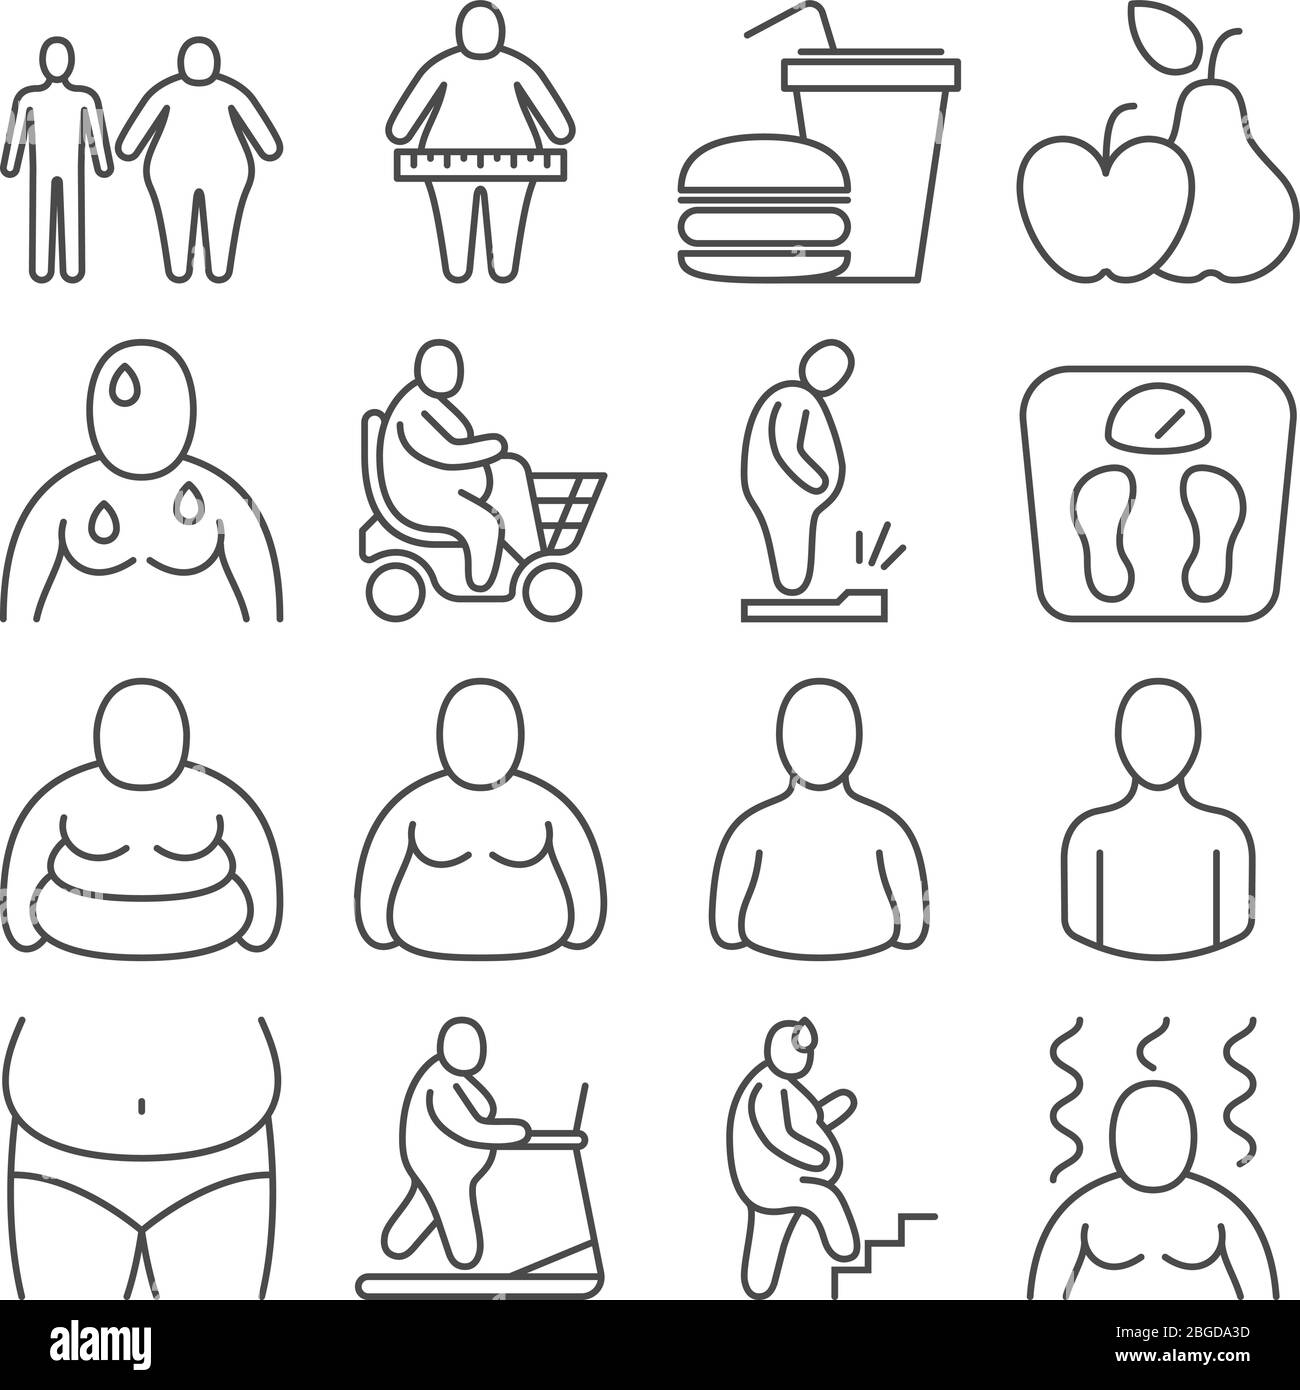 Classification obèses, personnes en surpoids malsaines et niveaux d'apparence corporelle icônes de ligne vectorielle. Illustration de l'obésité et de l'embonpoint corporel des personnes Illustration de Vecteur